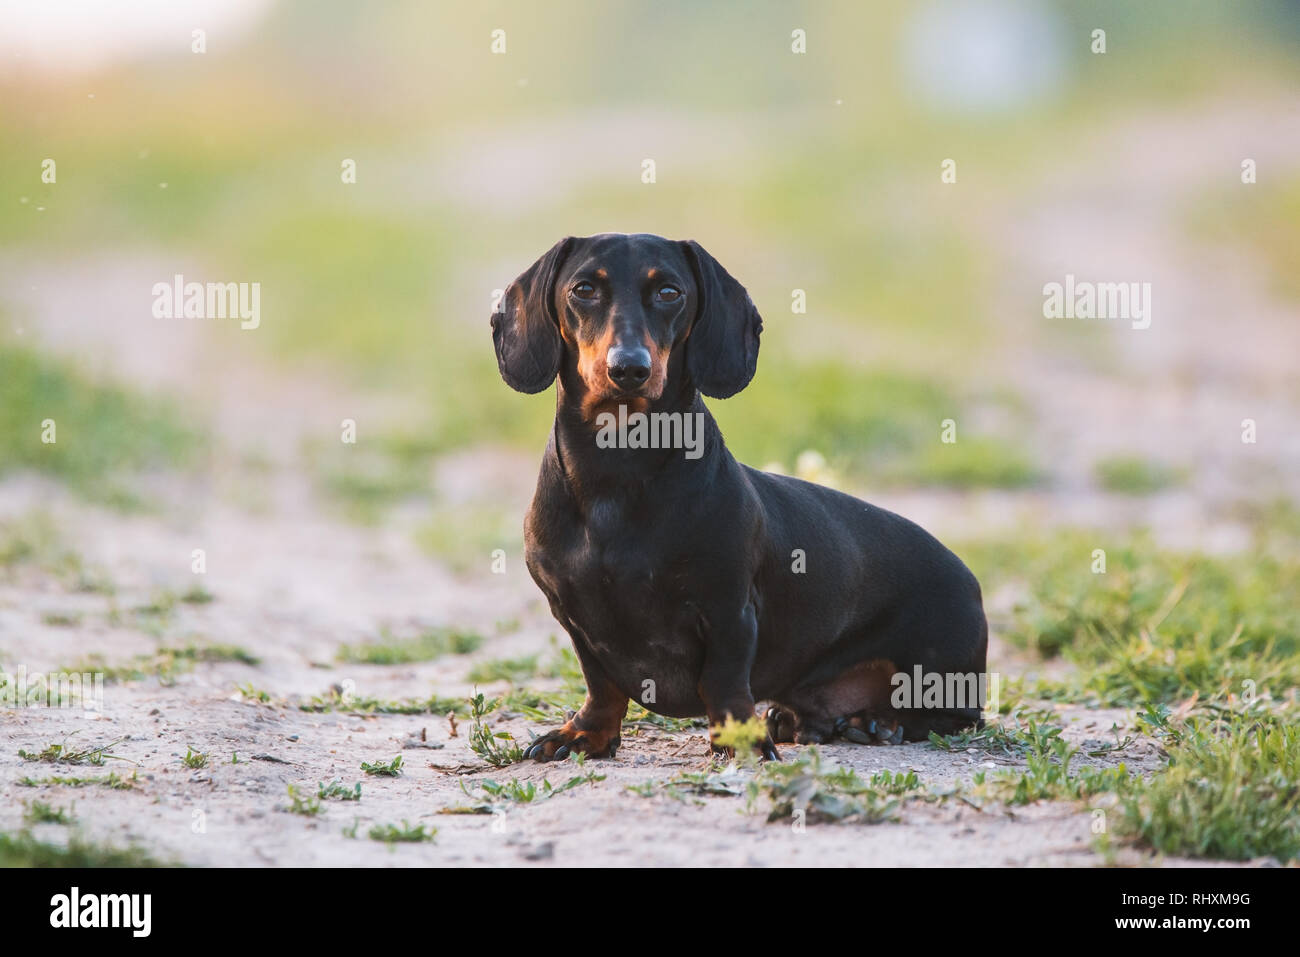 Cute black dachshund Stock Photo